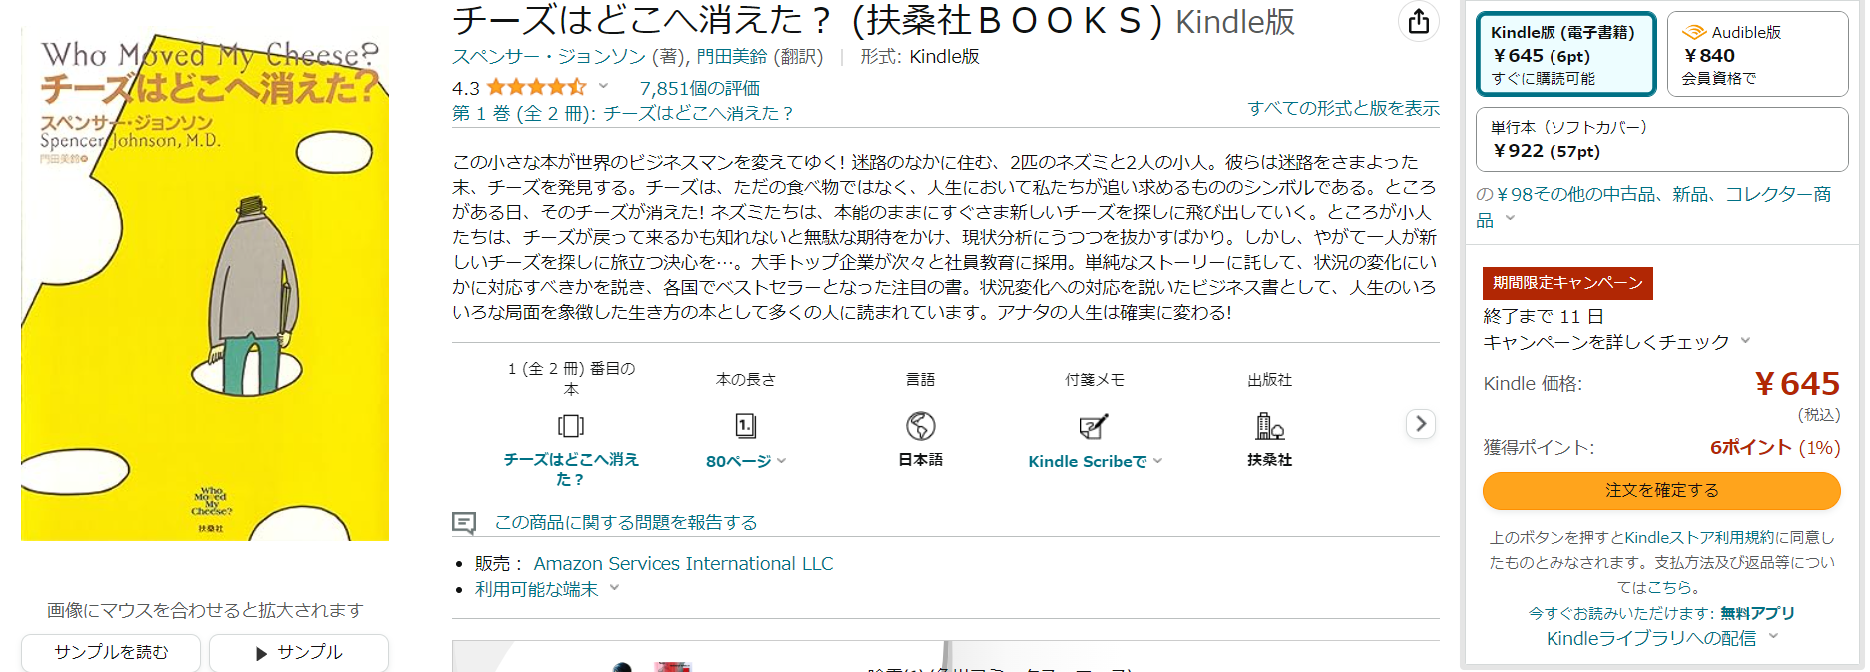 아마존에서 판매중인 Kindle 전자책 (현재 캠페인으로 645엔으로 판매중)